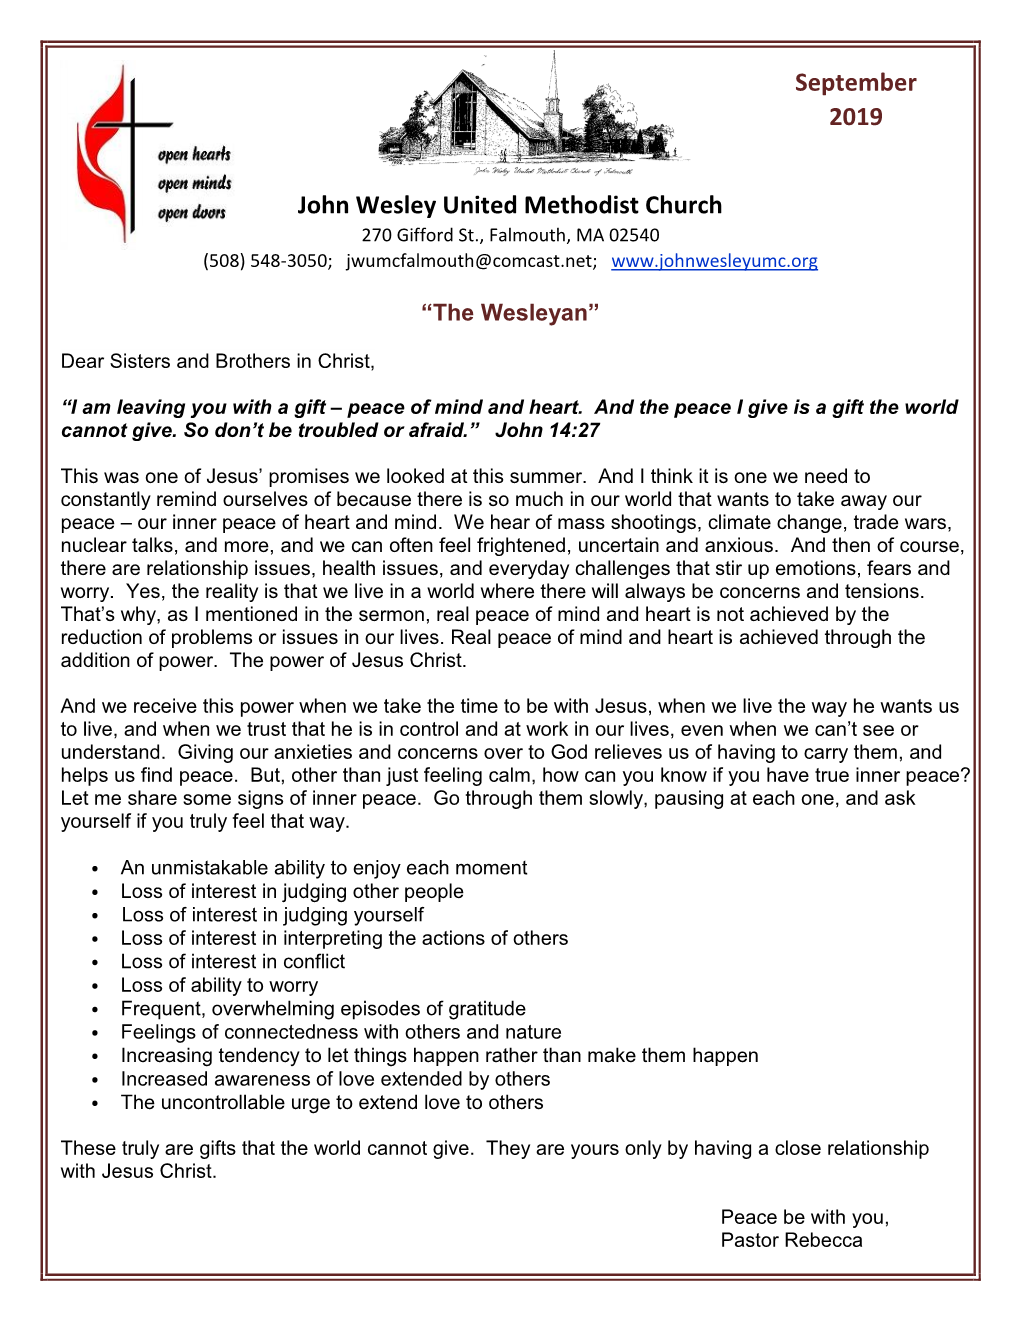 John Wesley United Methodist Church September 2019